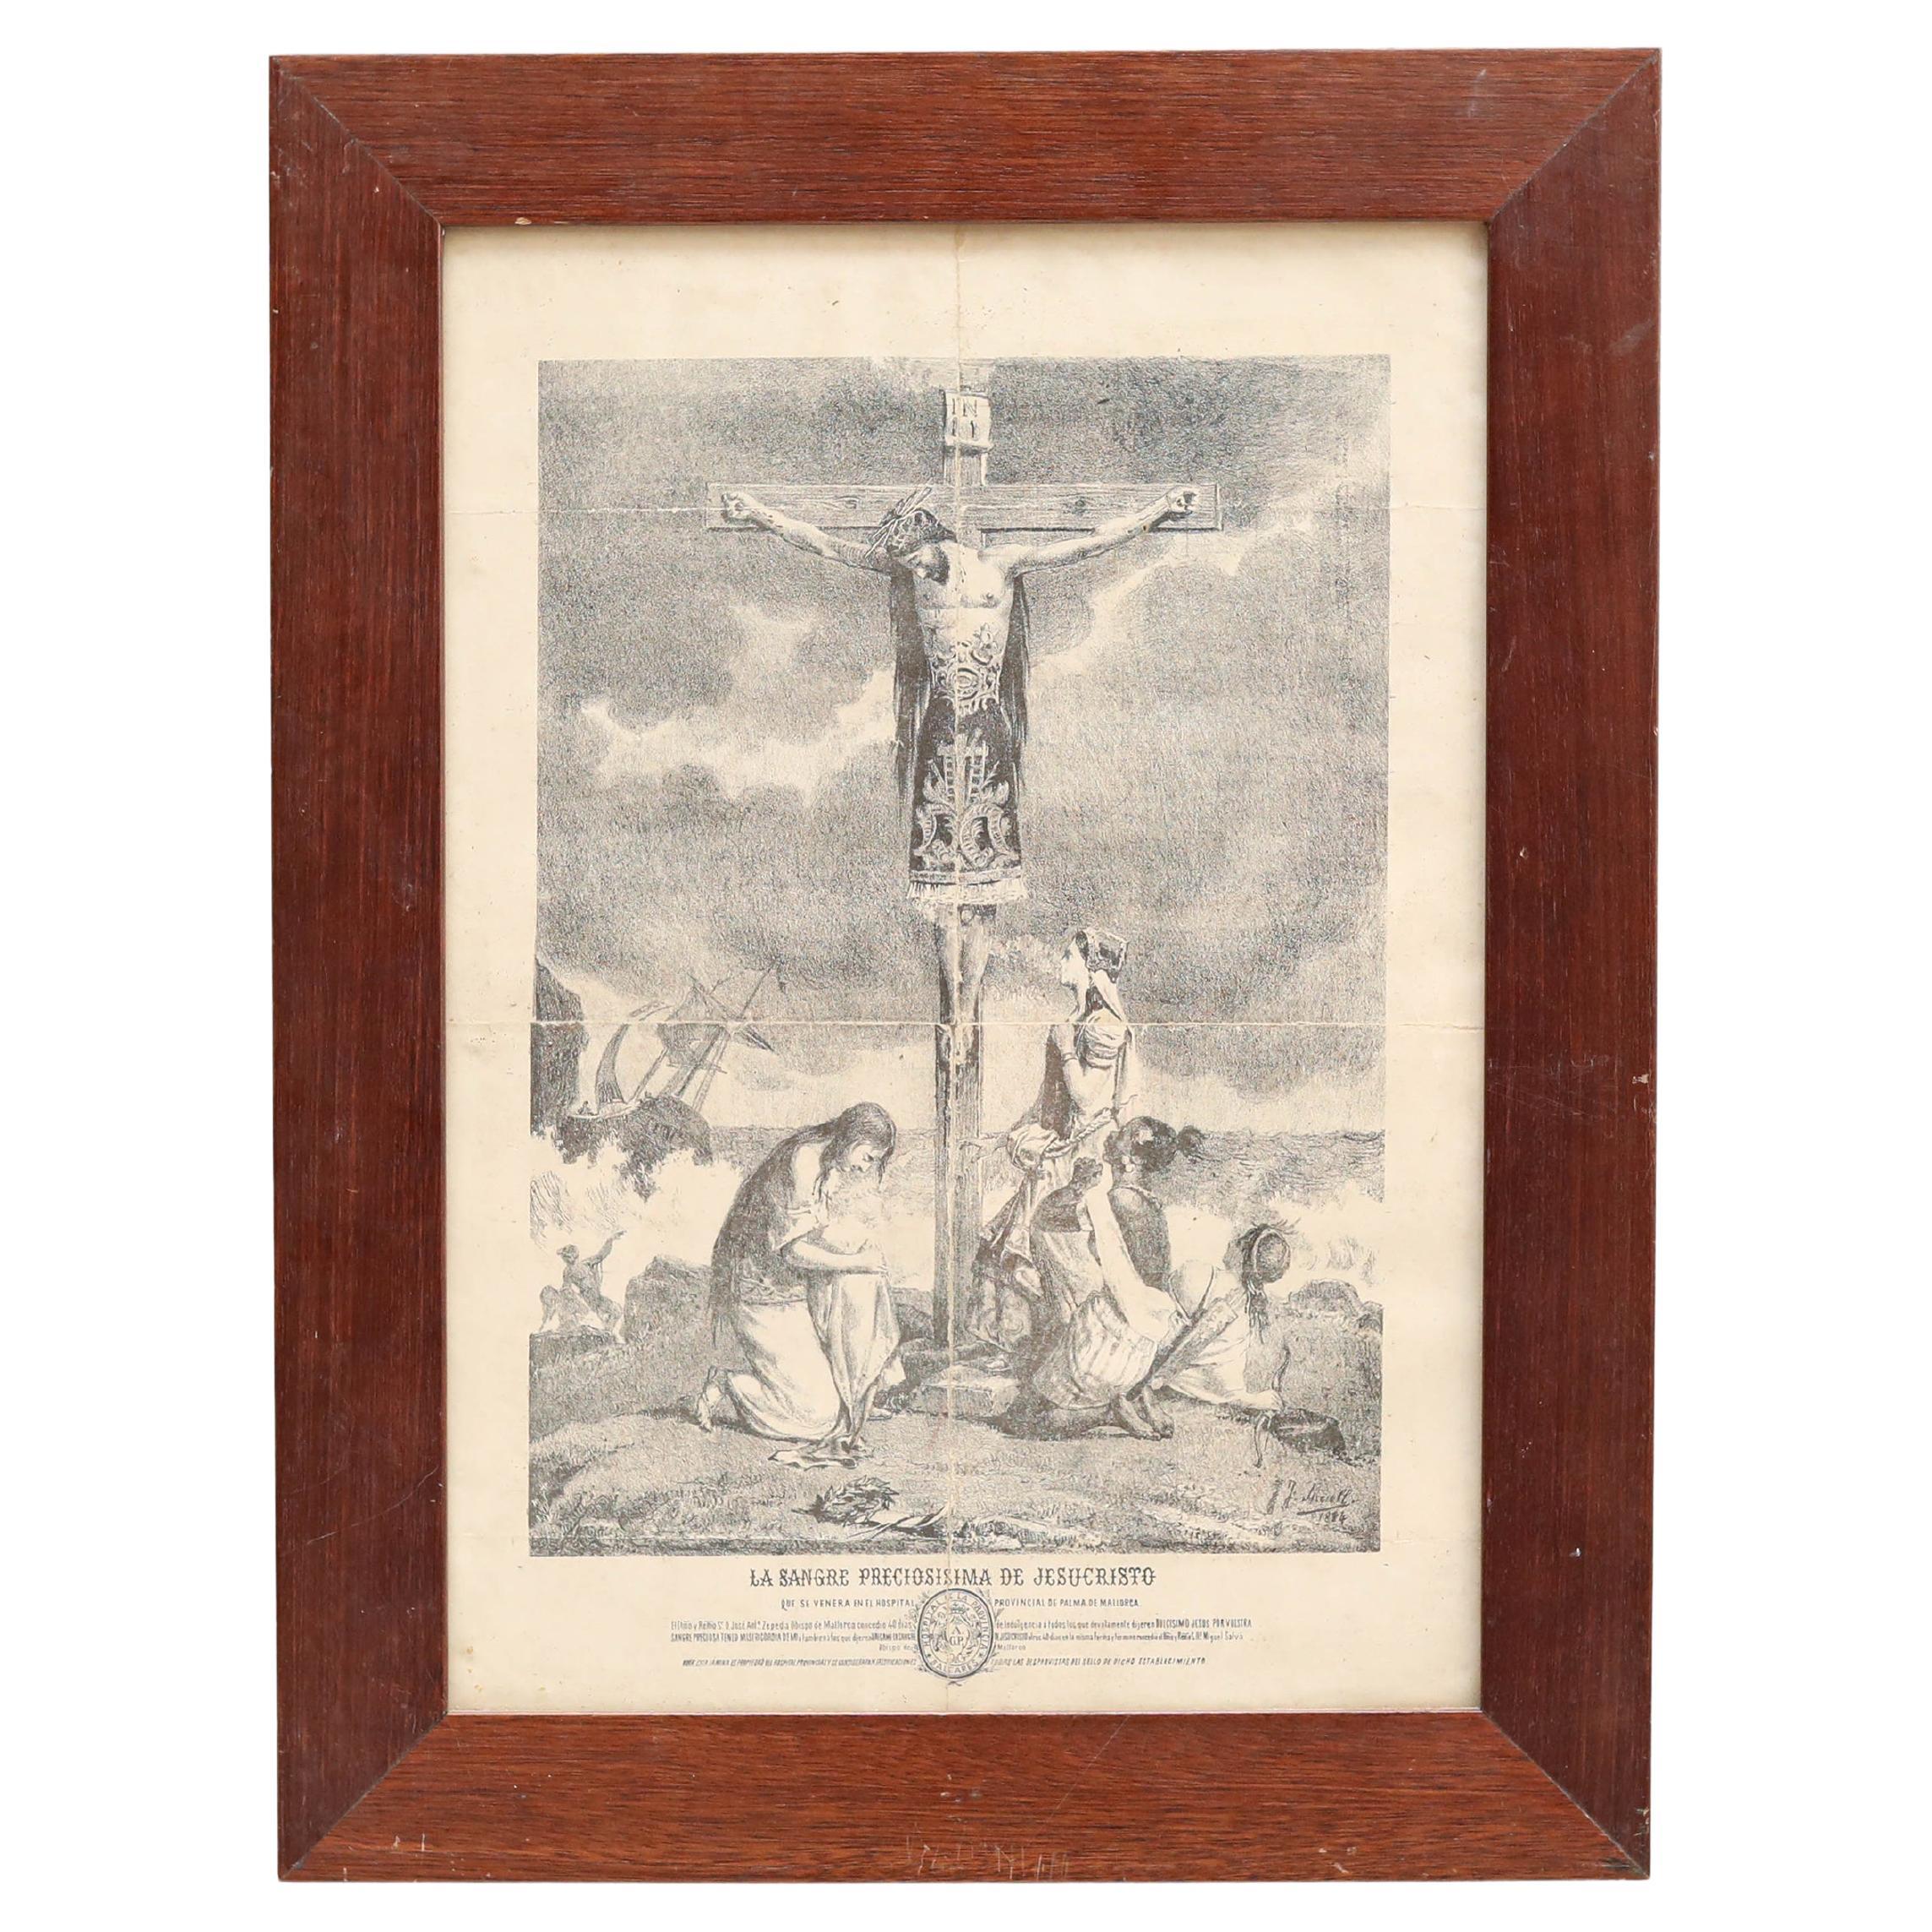 Impression encadrée de Jésus sur la croix, gravure sur papier, datant d'environ 1930 